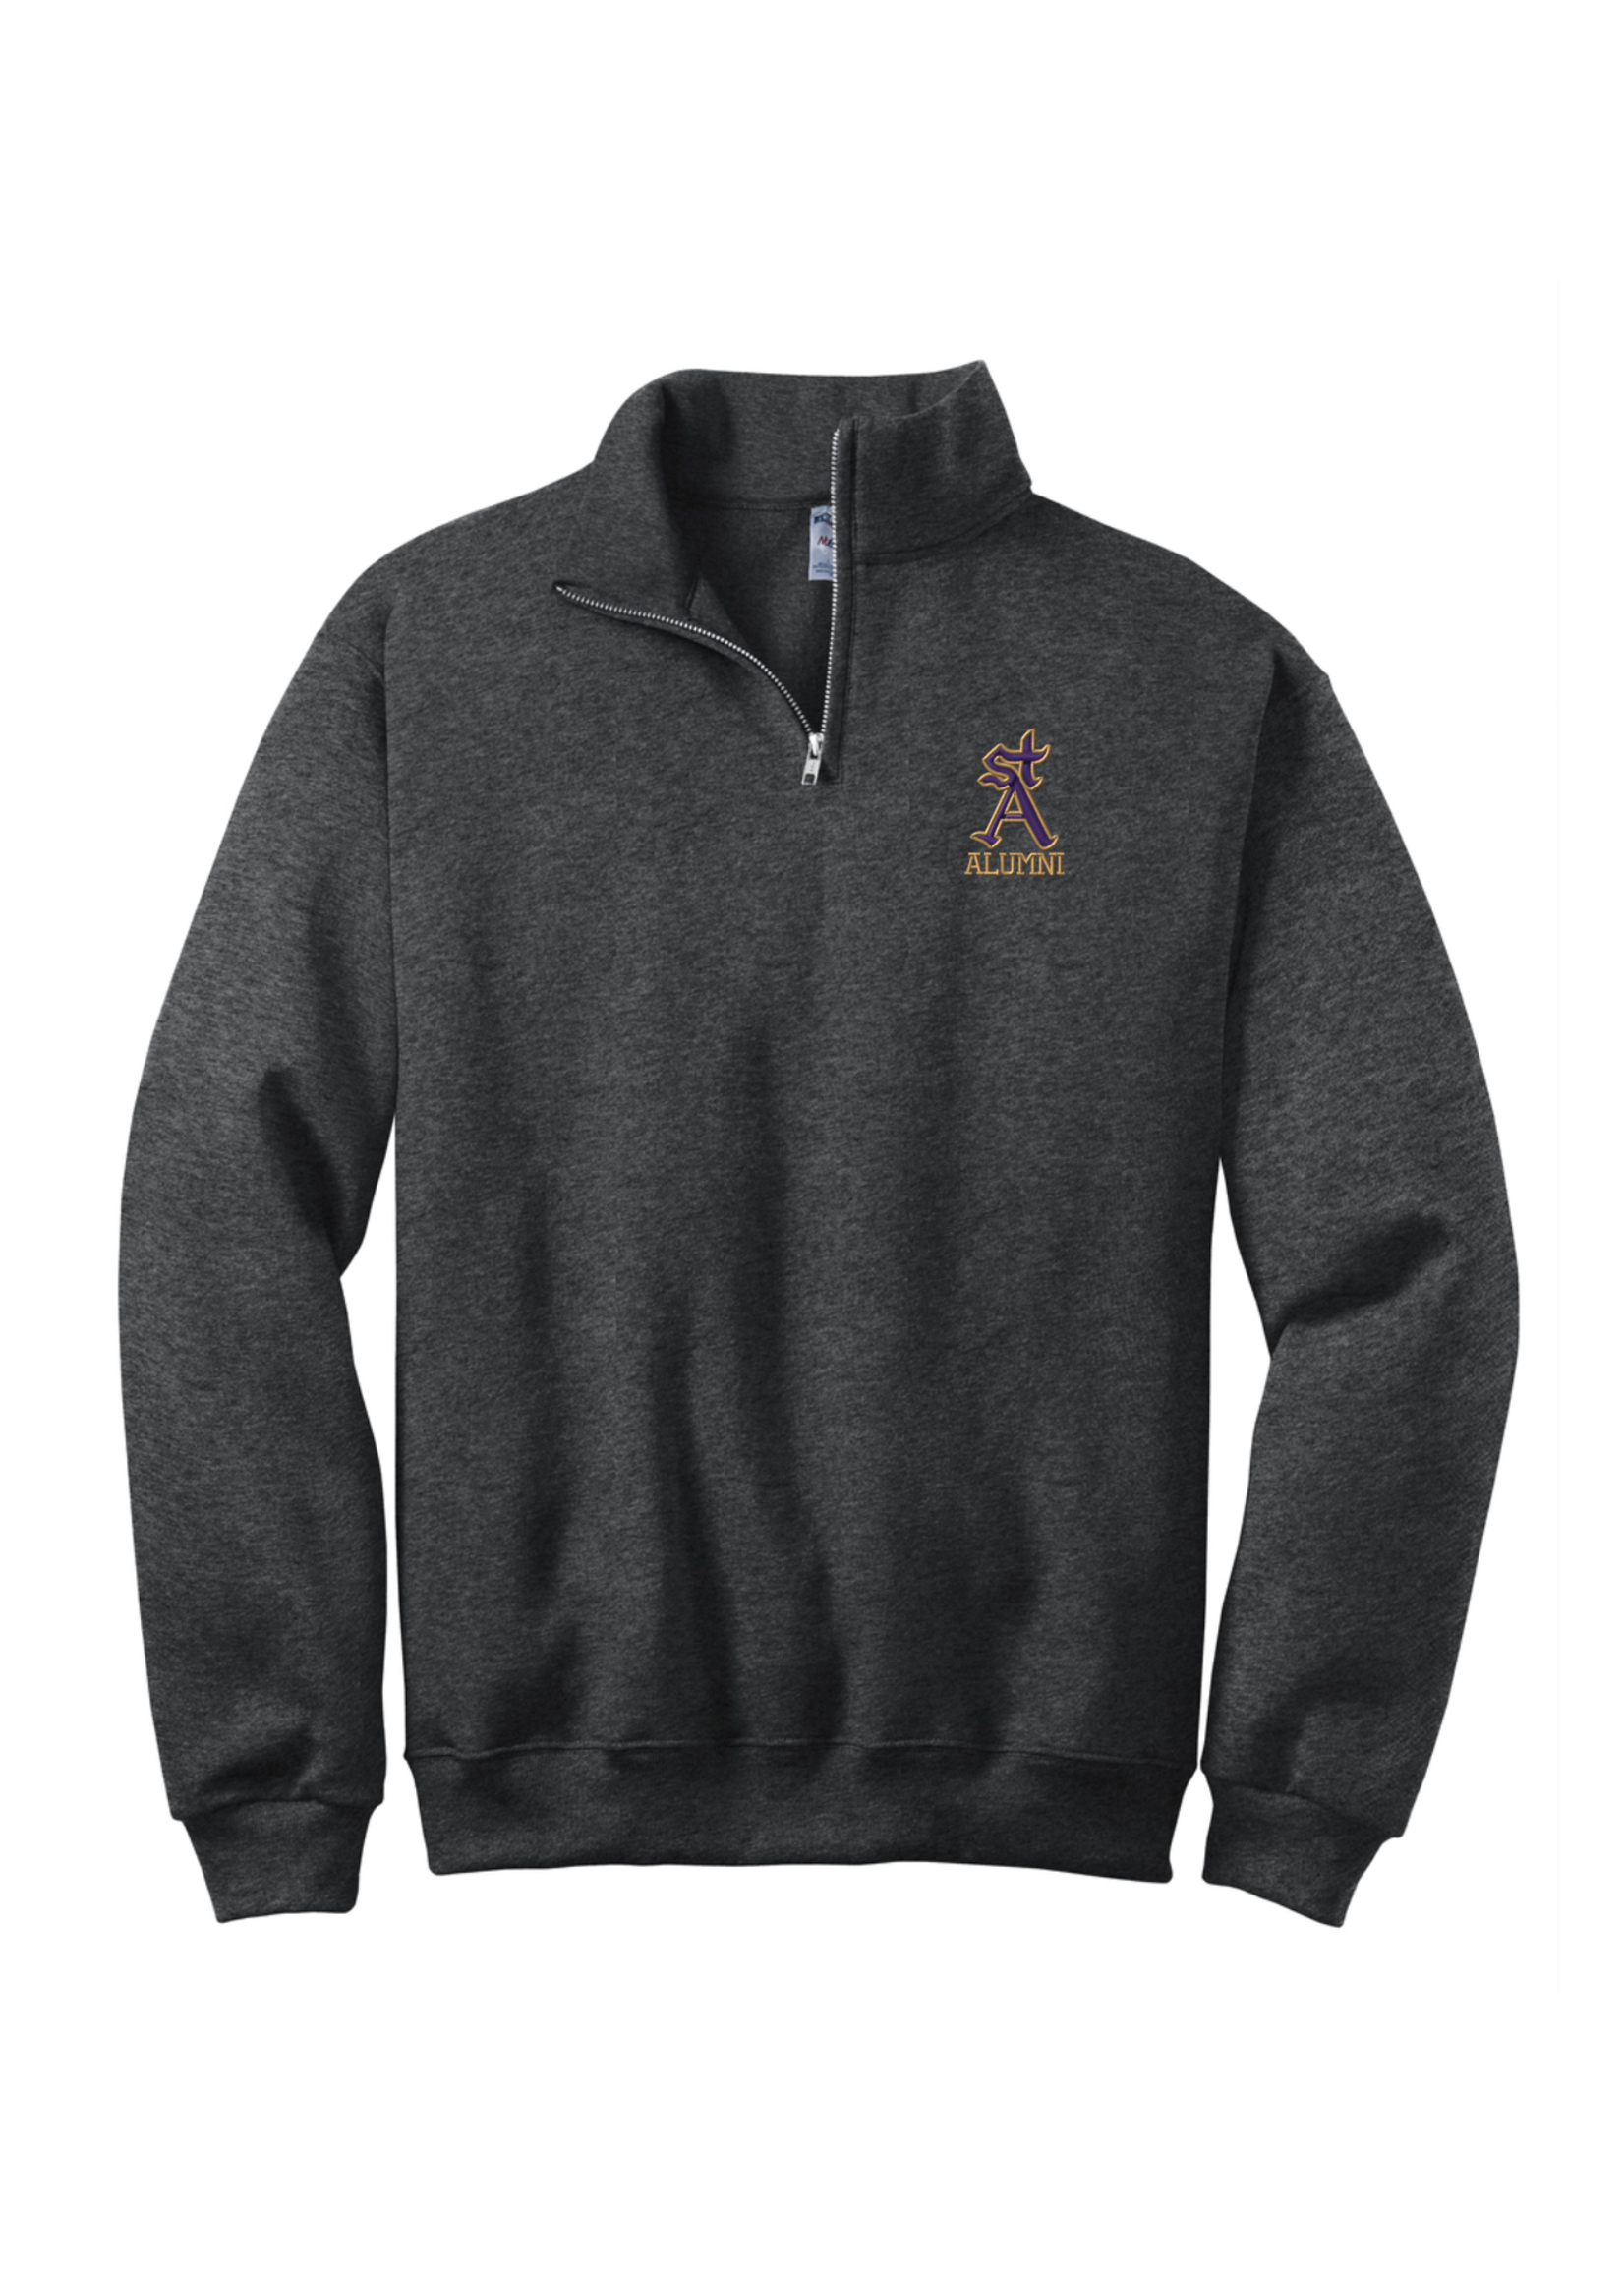 SAHS Alumni 1/4-Zip Cadet Collar Sweatshirt